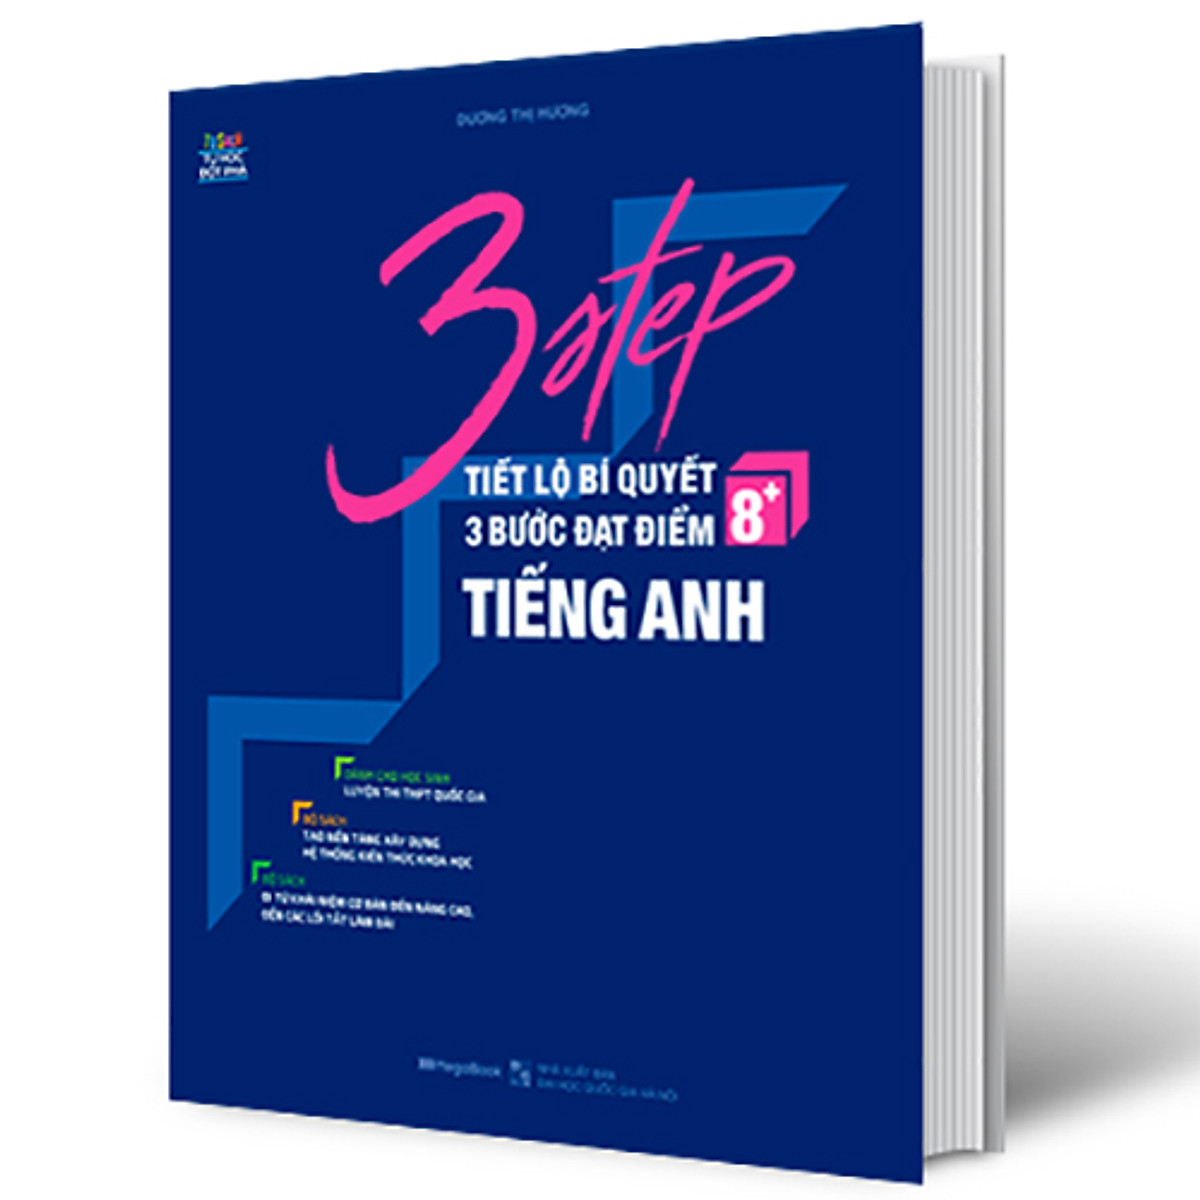 3 Step - Tiết Lộ Bí Quyết 3 Bước Đạt Điểm 8+ Tiếng Anh ebook PDF-EPUB-AWZ3-PRC-MOBI